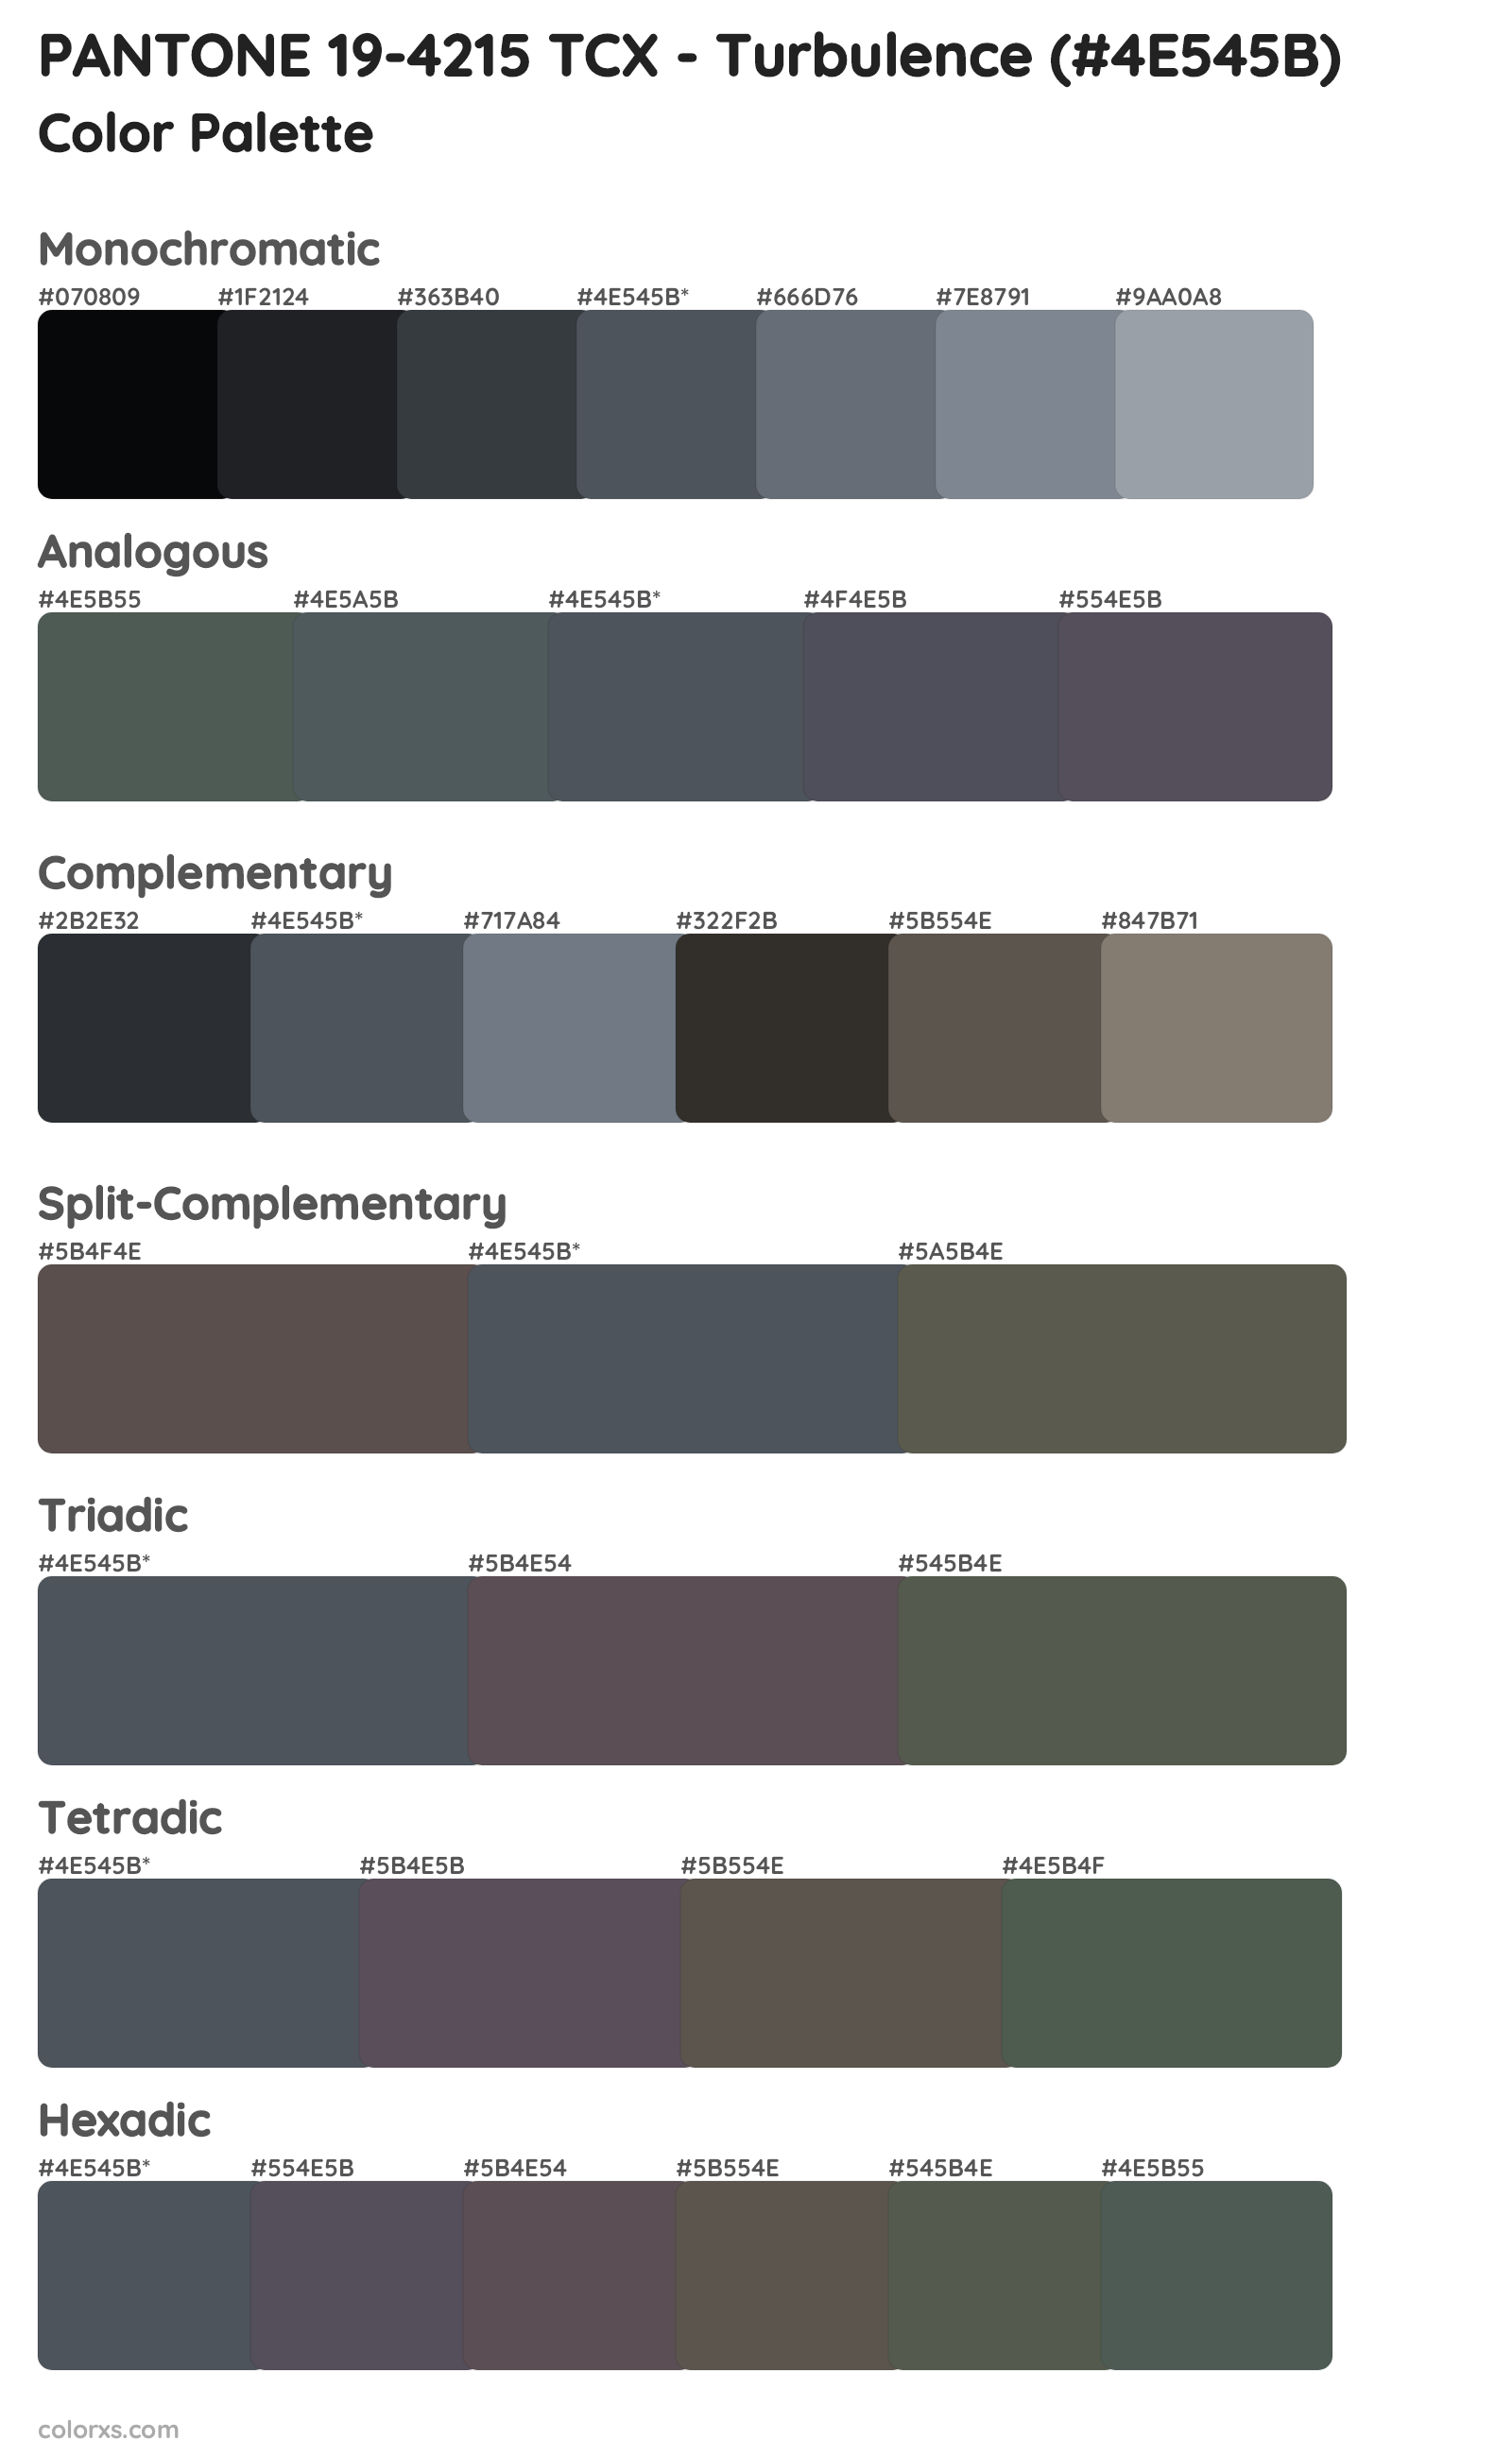 PANTONE 19-4215 TCX - Turbulence Color Scheme Palettes